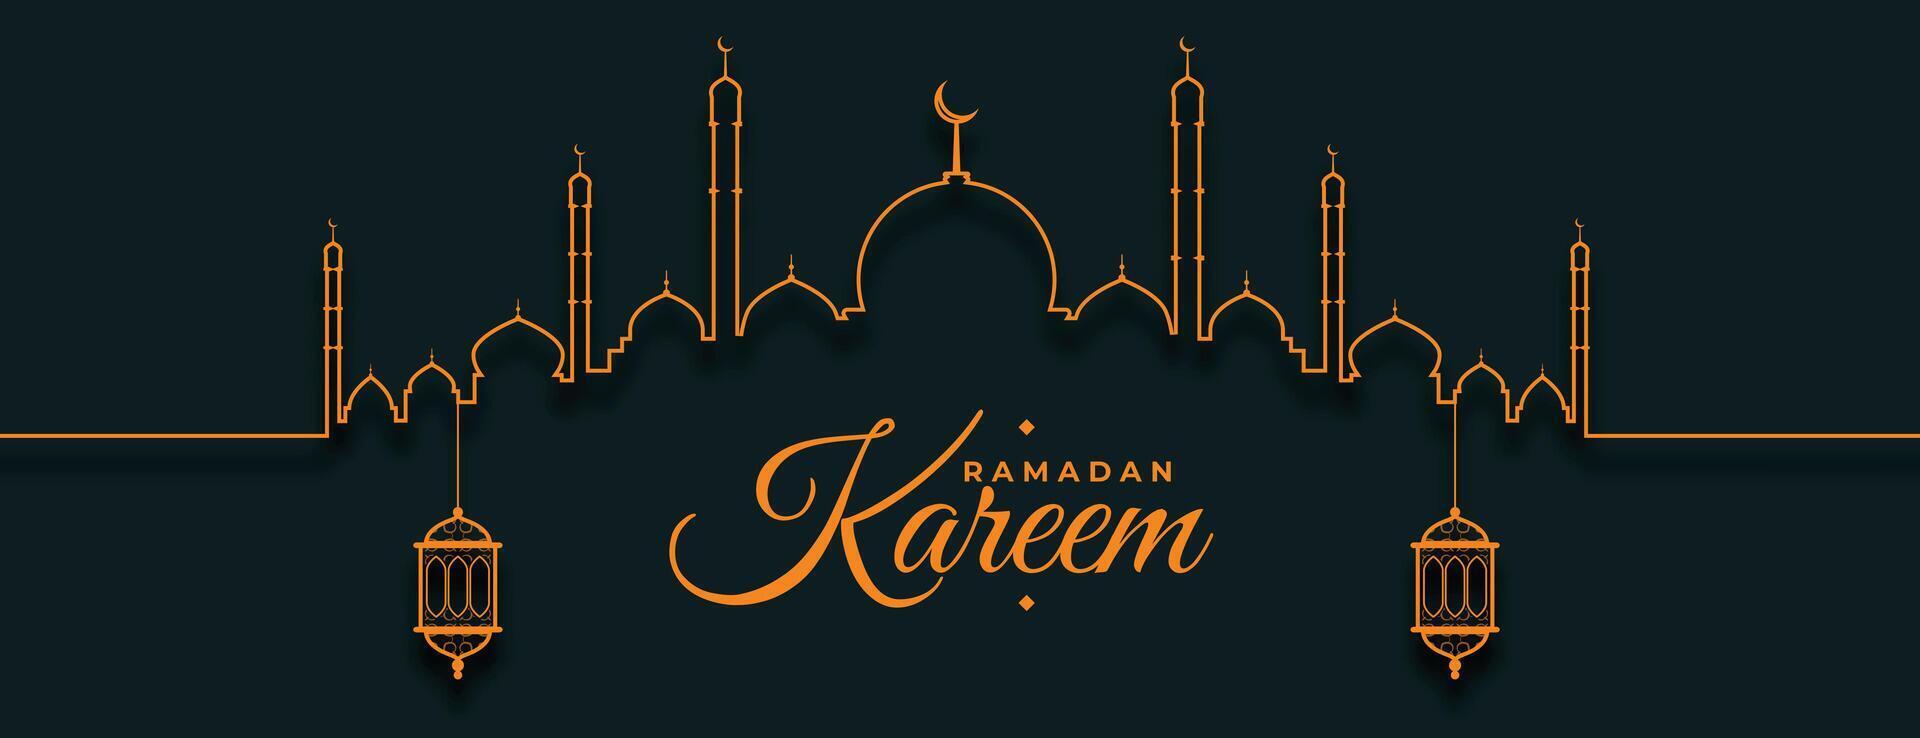 line style ramadan kareem nice eid banner design vector